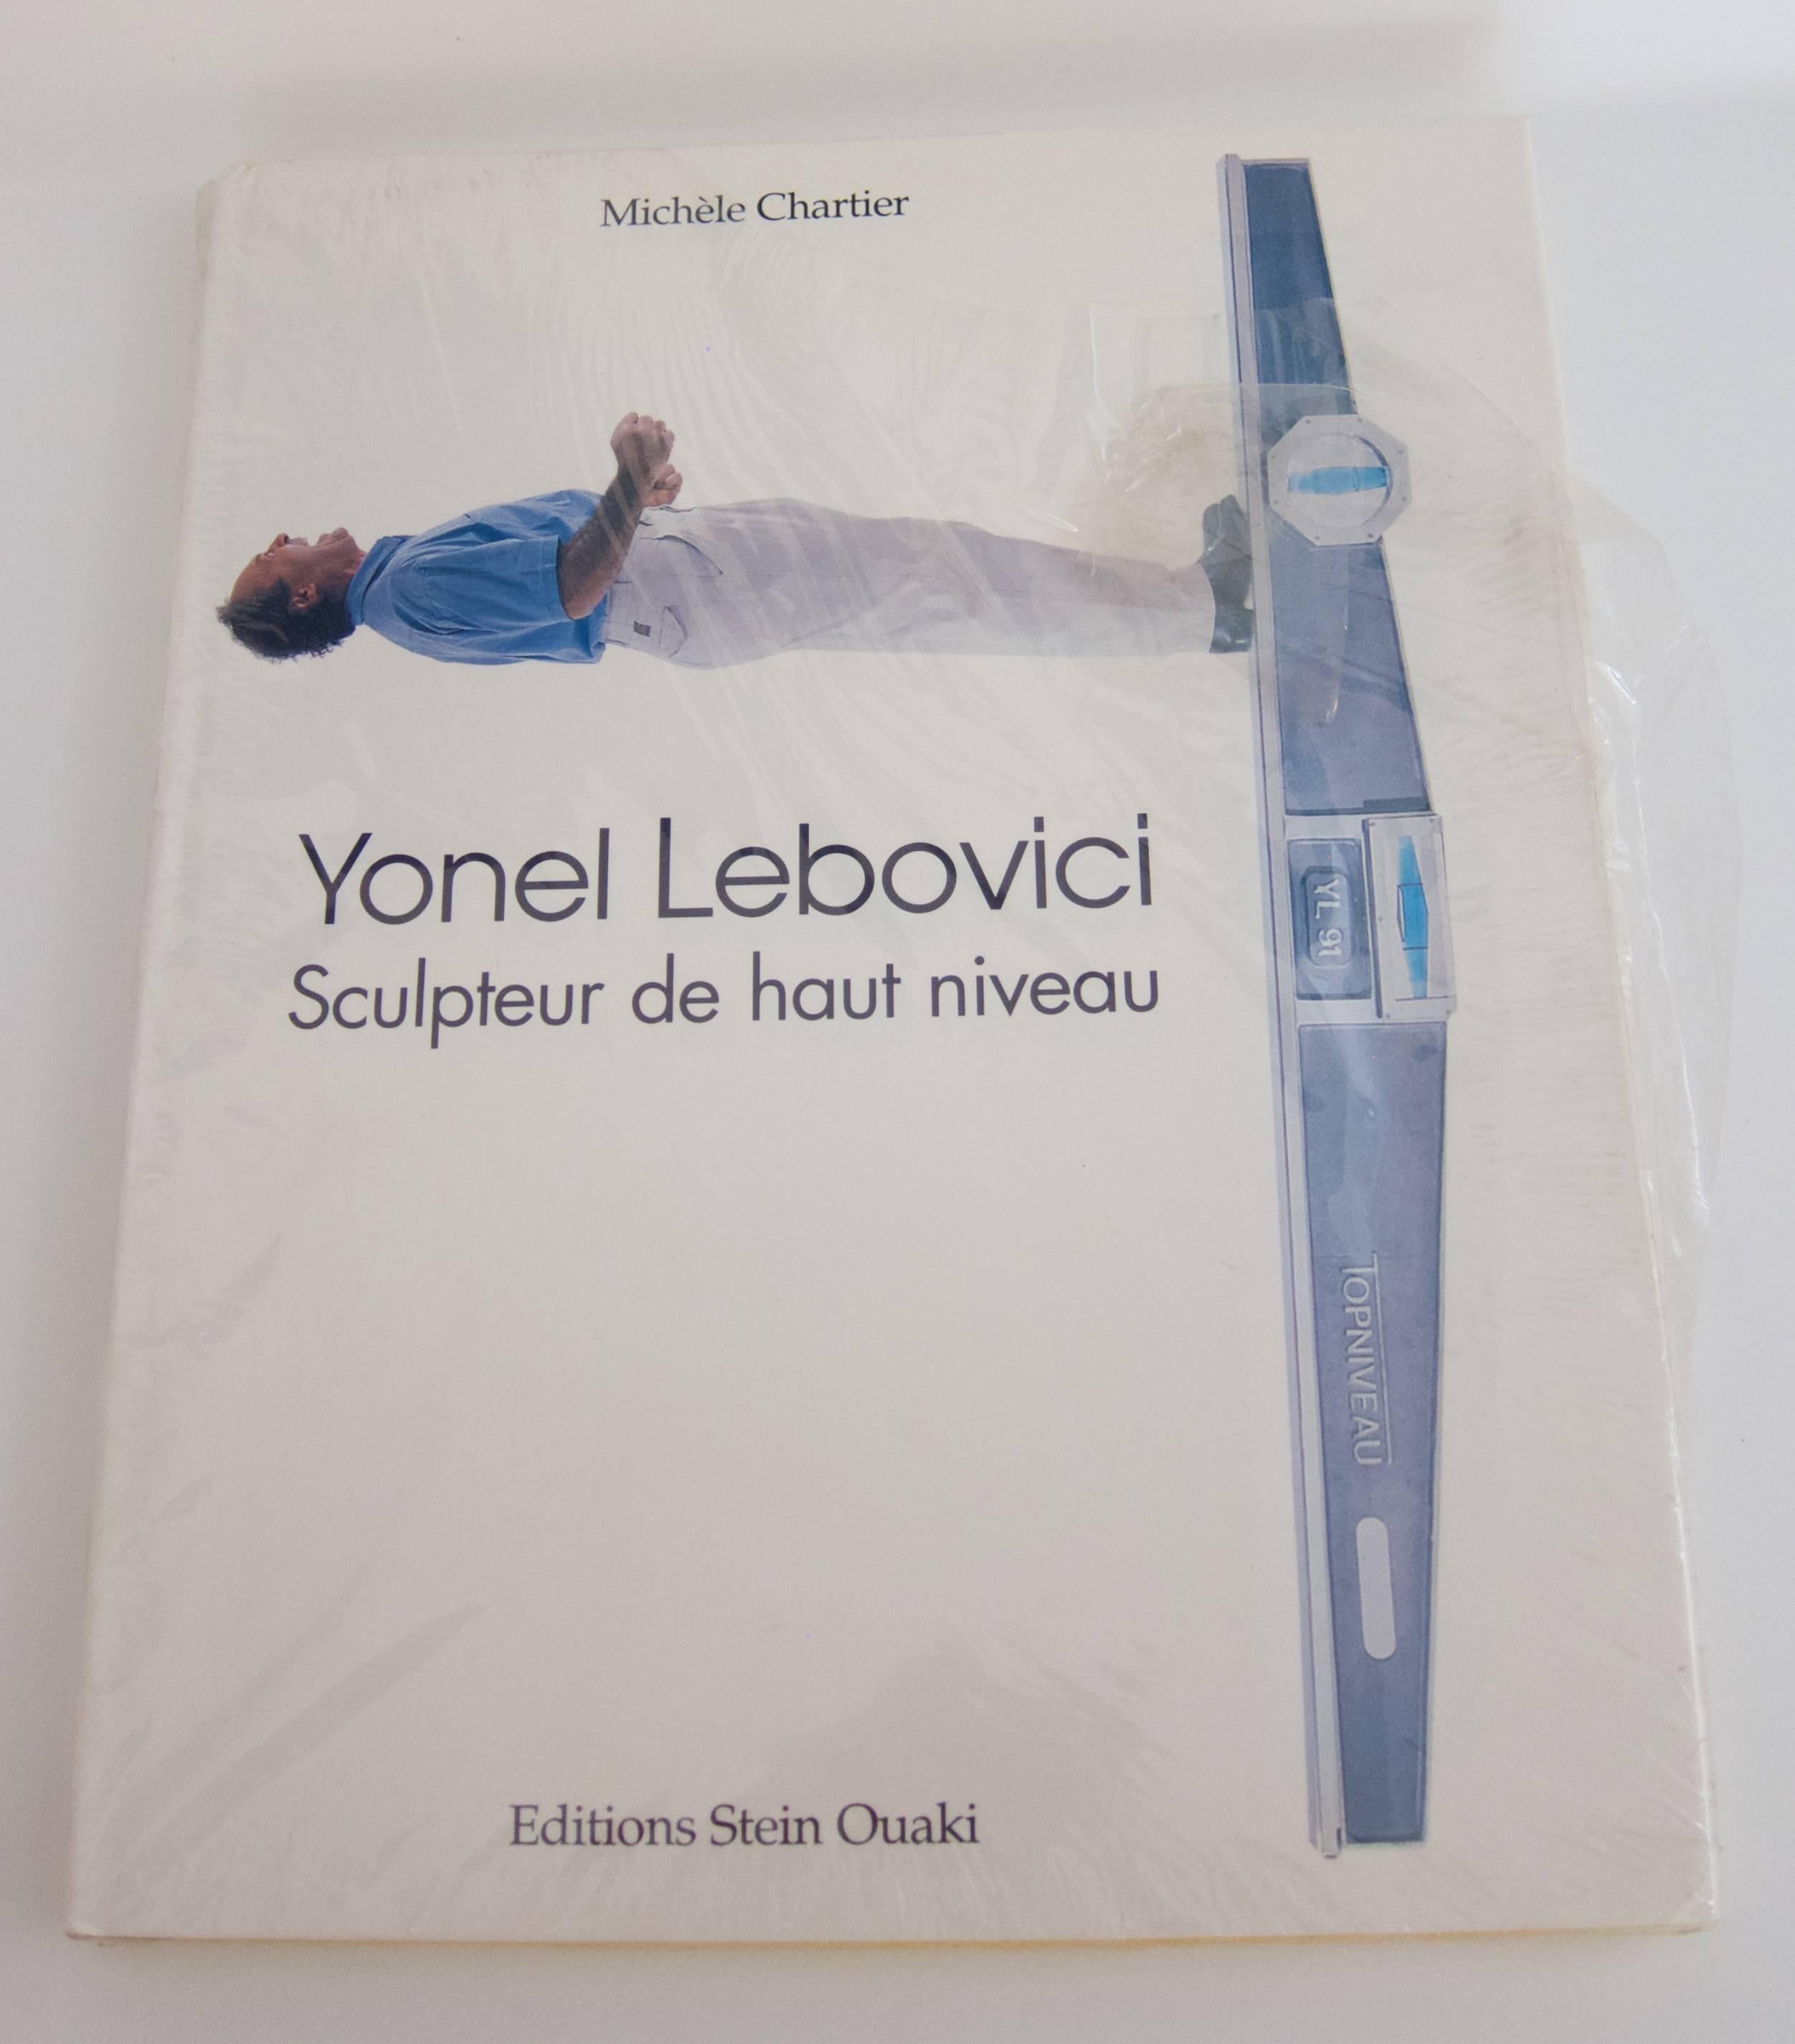 Rare Book: Yonel Lebovici, Sculpteur de haut niveau For Sale 2